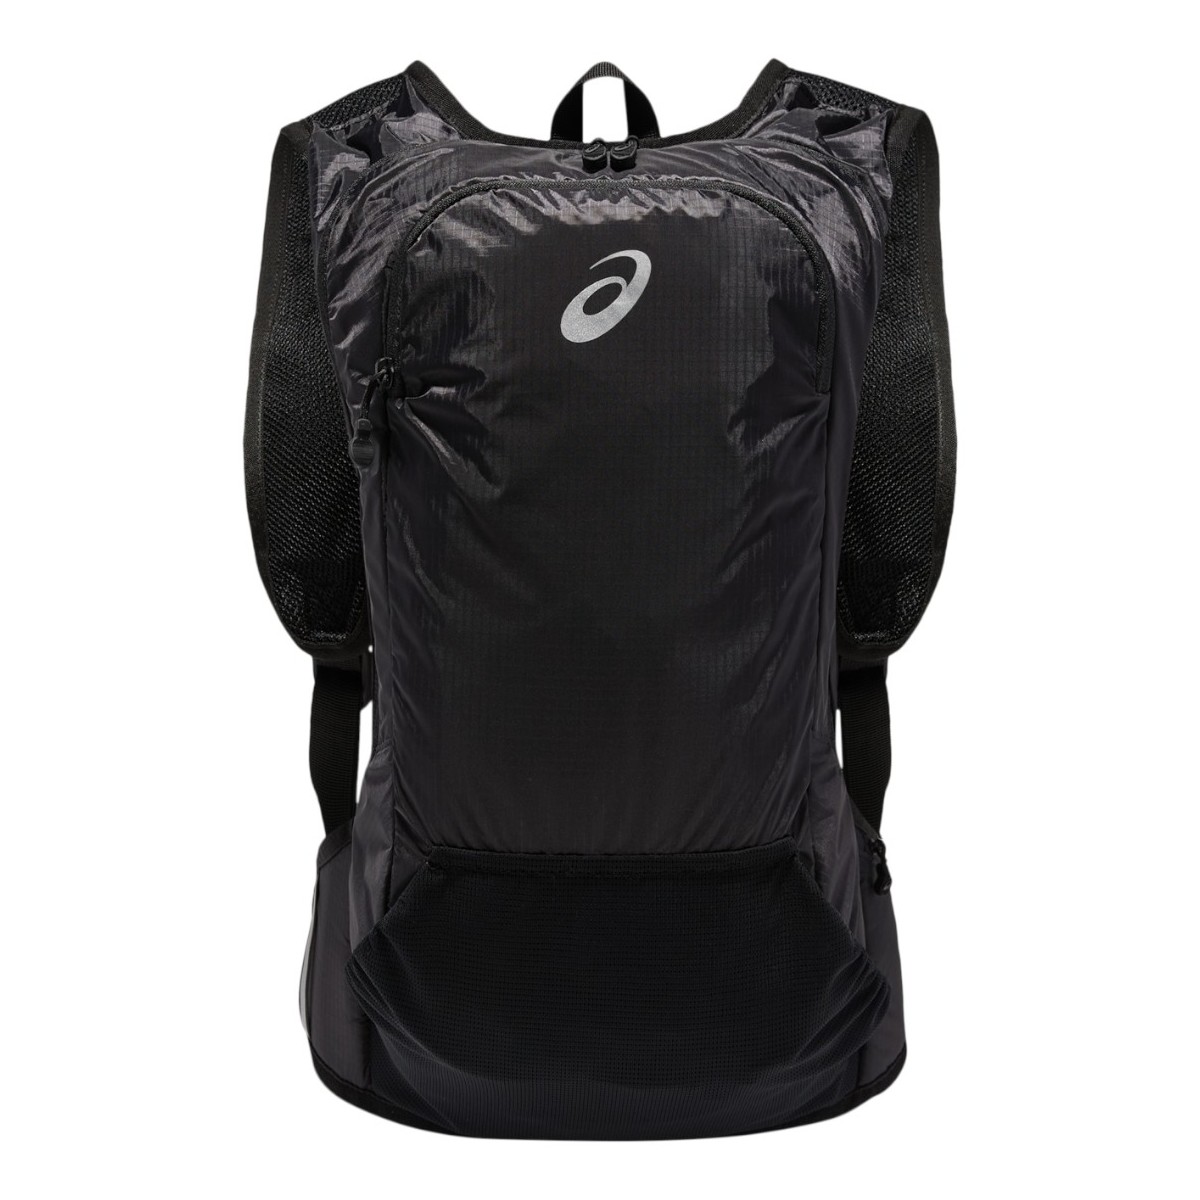 Sacs Sacs à dos Asics Lightweight Running Backpack 2.0 Noir